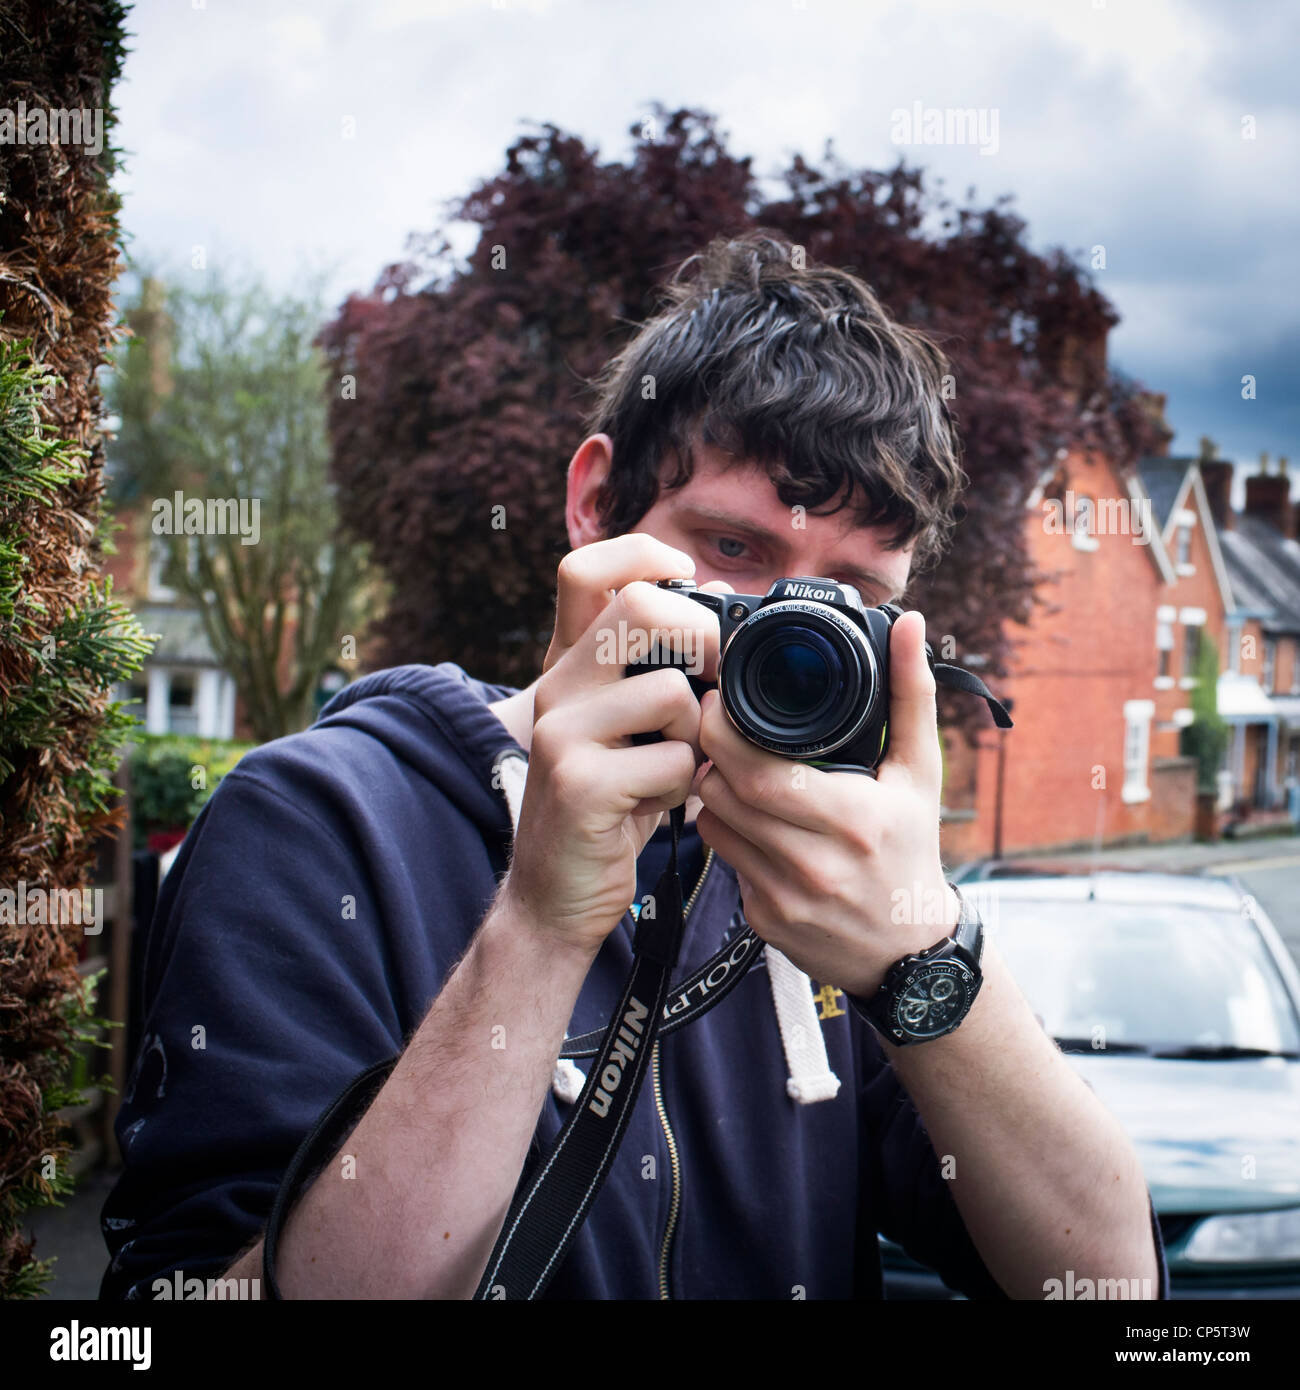 ein University College Medien Film Studium Student mit einer 35mm DSLR  Digitalkamera, UK Stockfotografie - Alamy